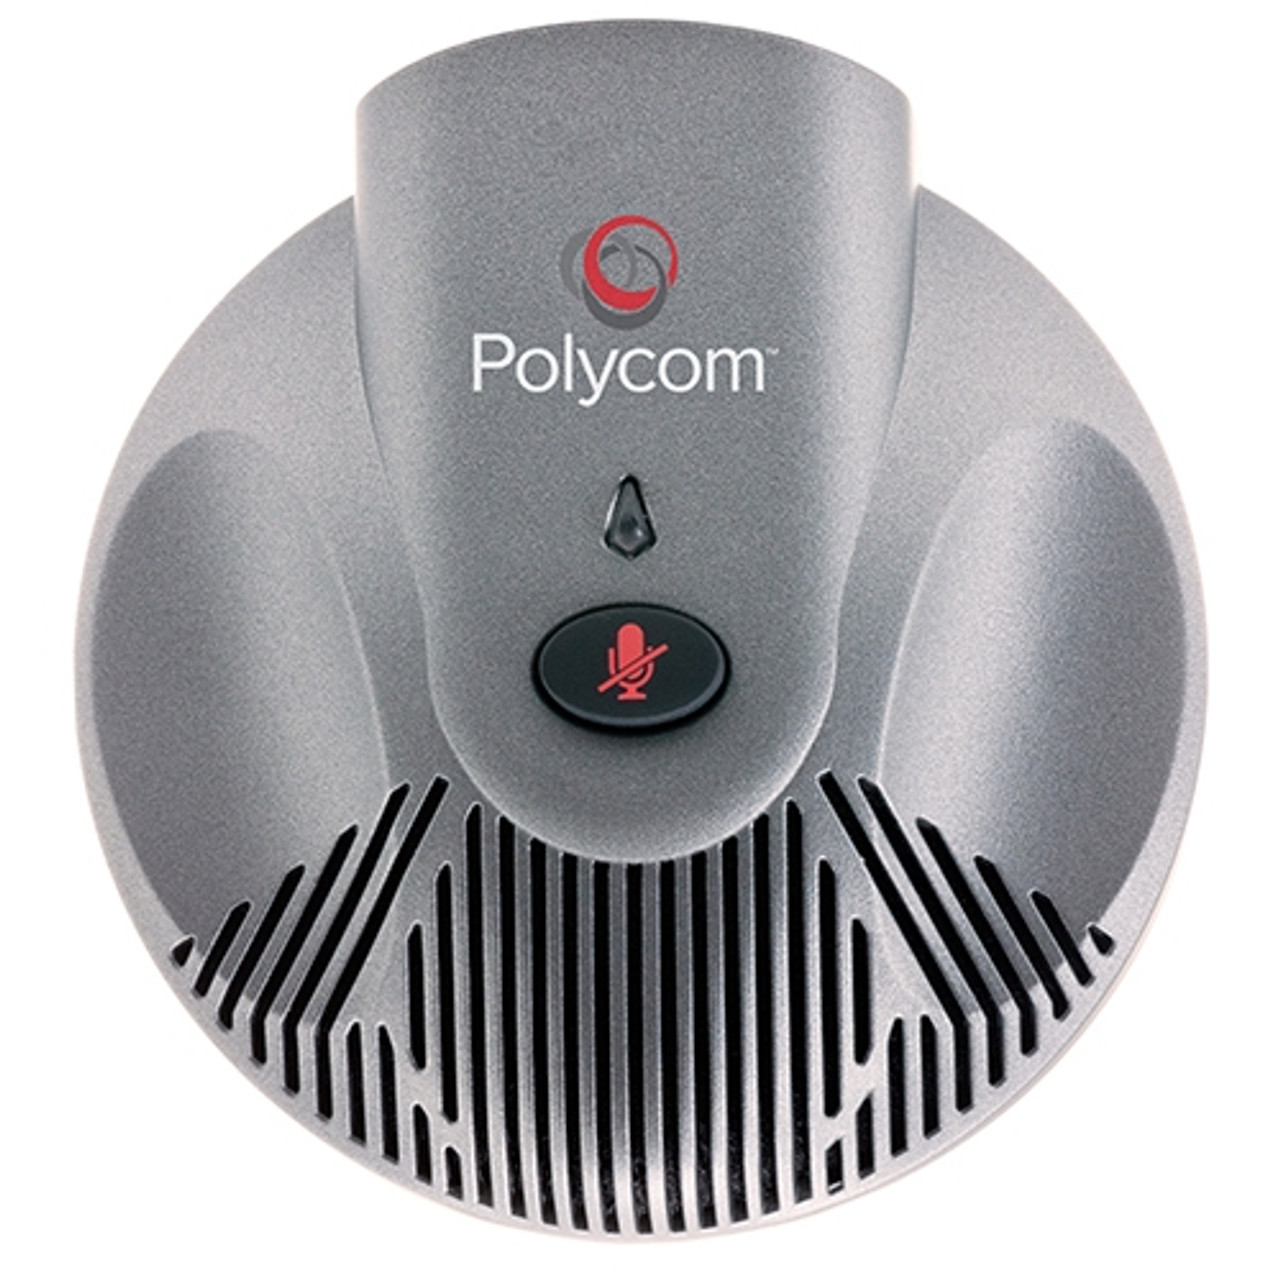 Polycom SoundStation2 Expansion Microphone Kit 2200-16155-001